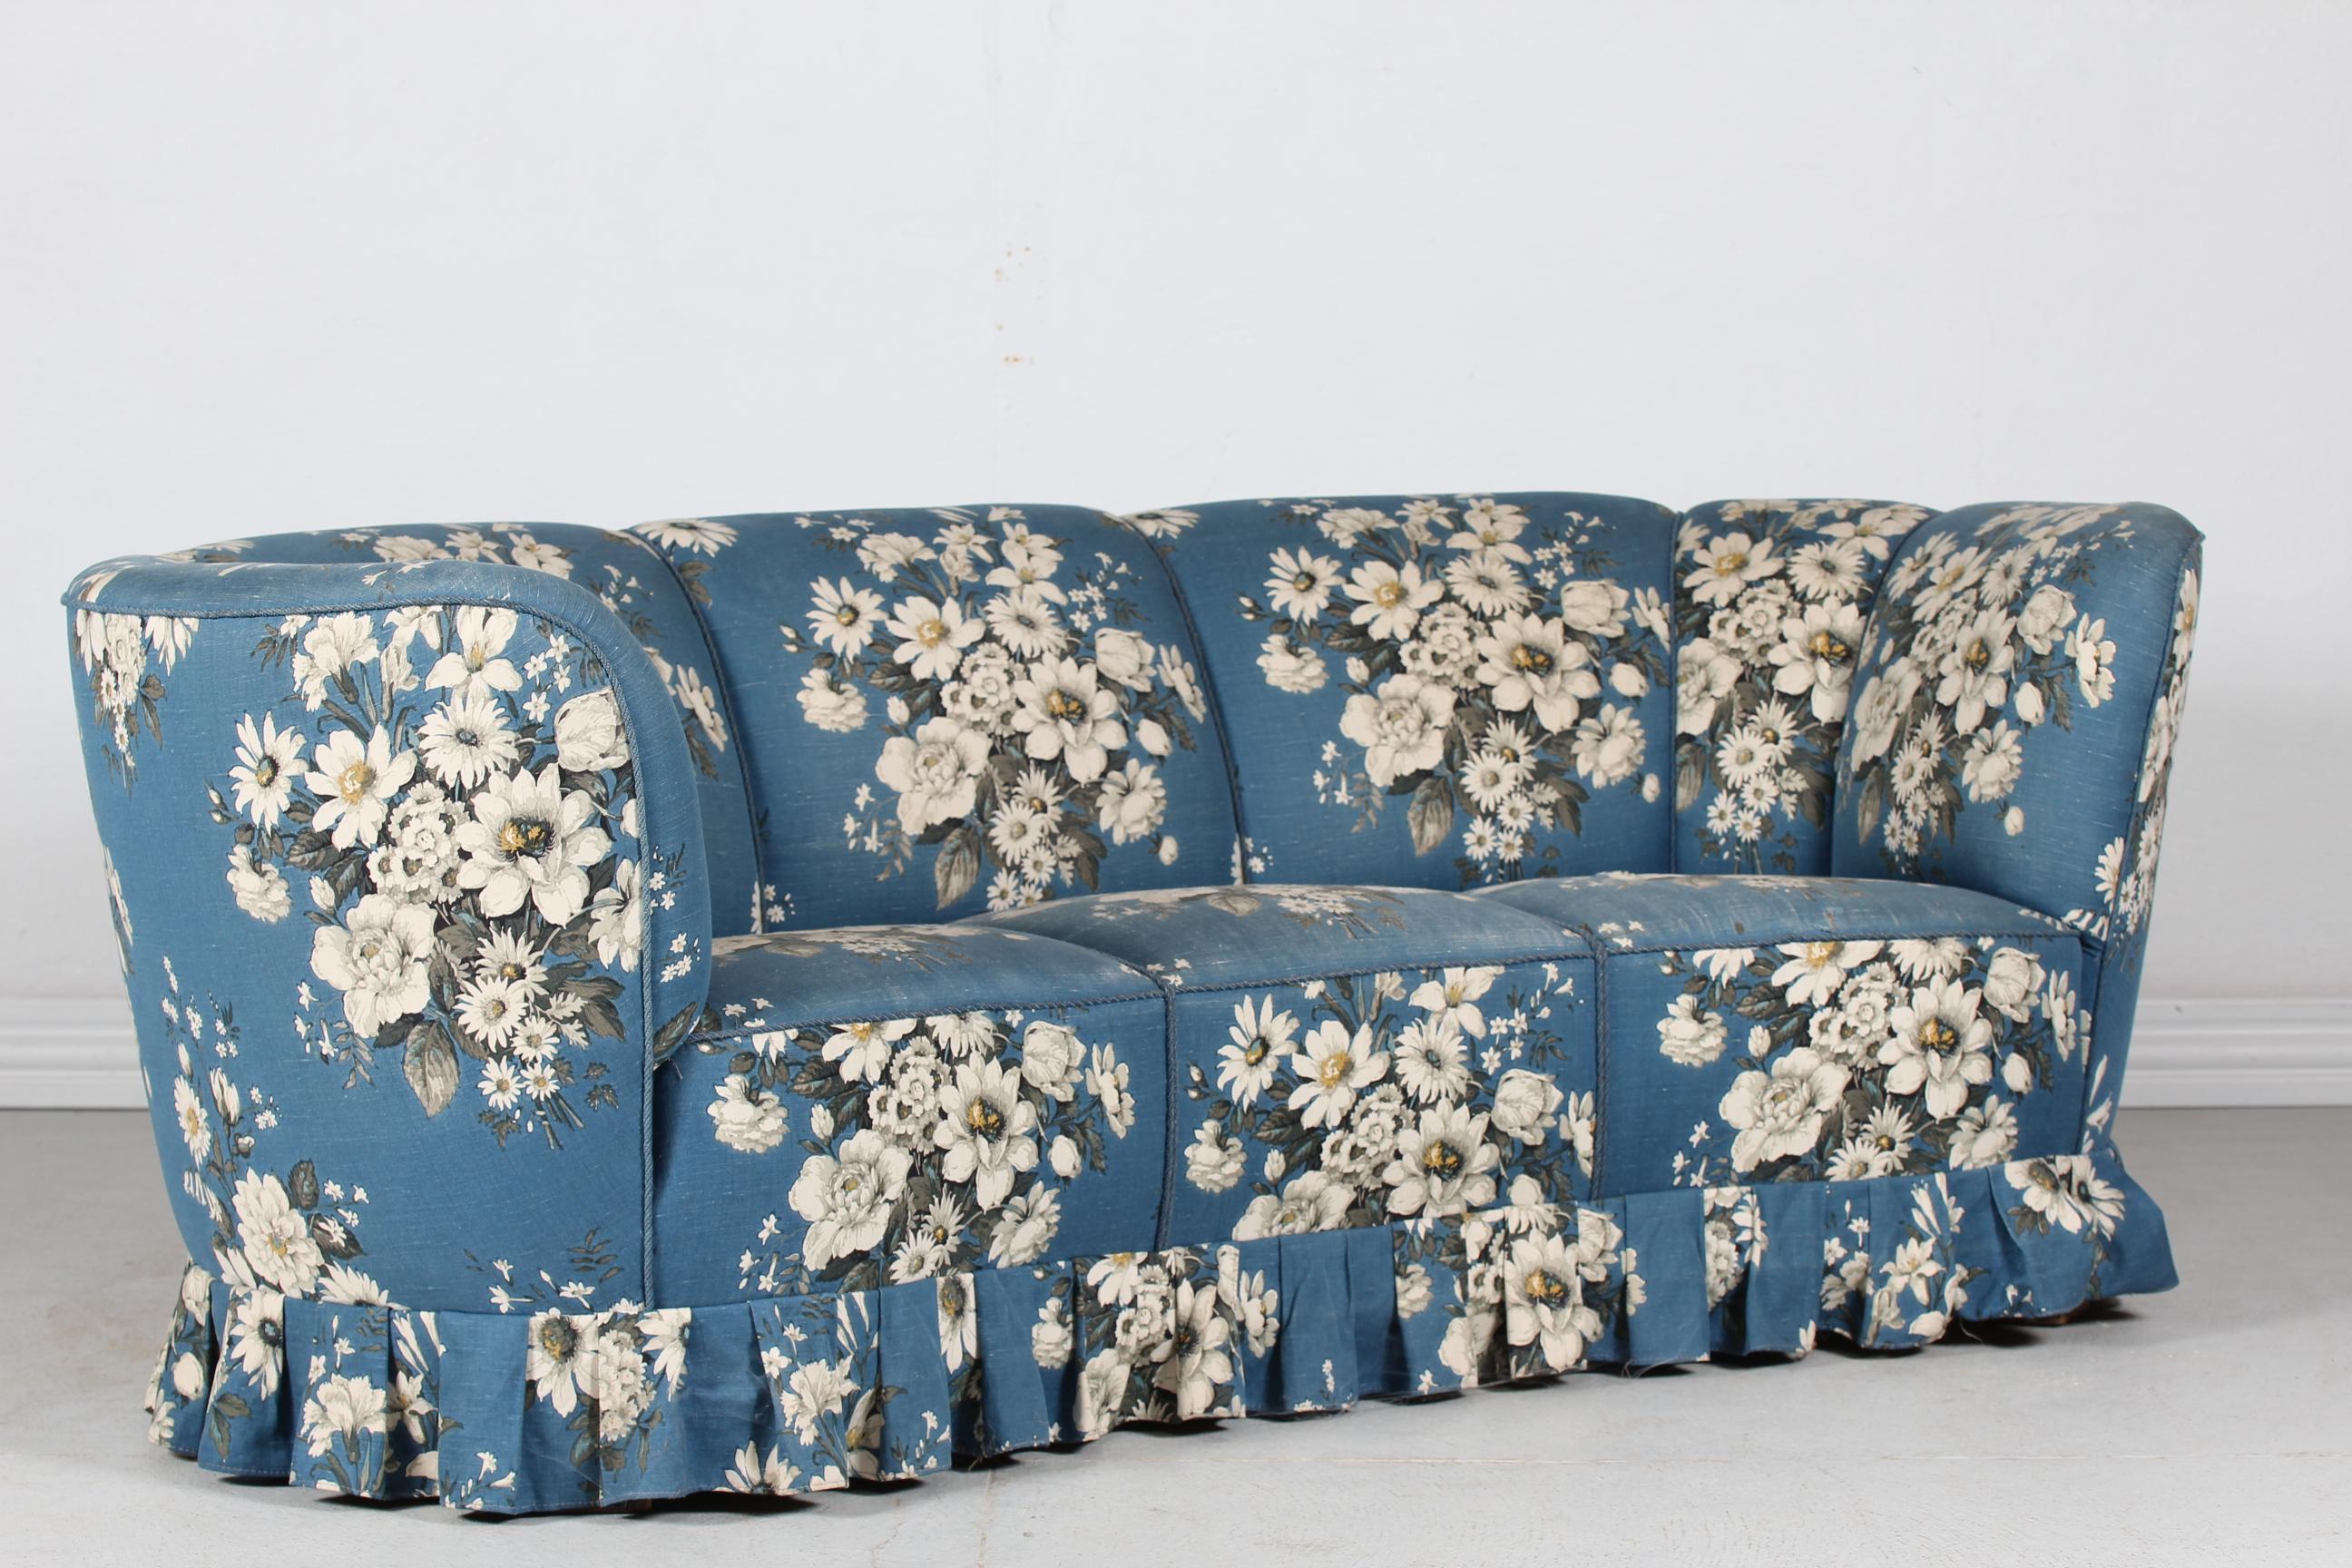 Geschwungene Couch oder Sofa im Stil von Fritz Hansen aus den 1940er Jahren.
Die Füße sind aus dunkel gebeiztem Buchenholz und das Sofa ist mit geblümtem Stoff in blauen und weißen Farben gepolstert.
Hergestellt von einem dänischen Tischler in den